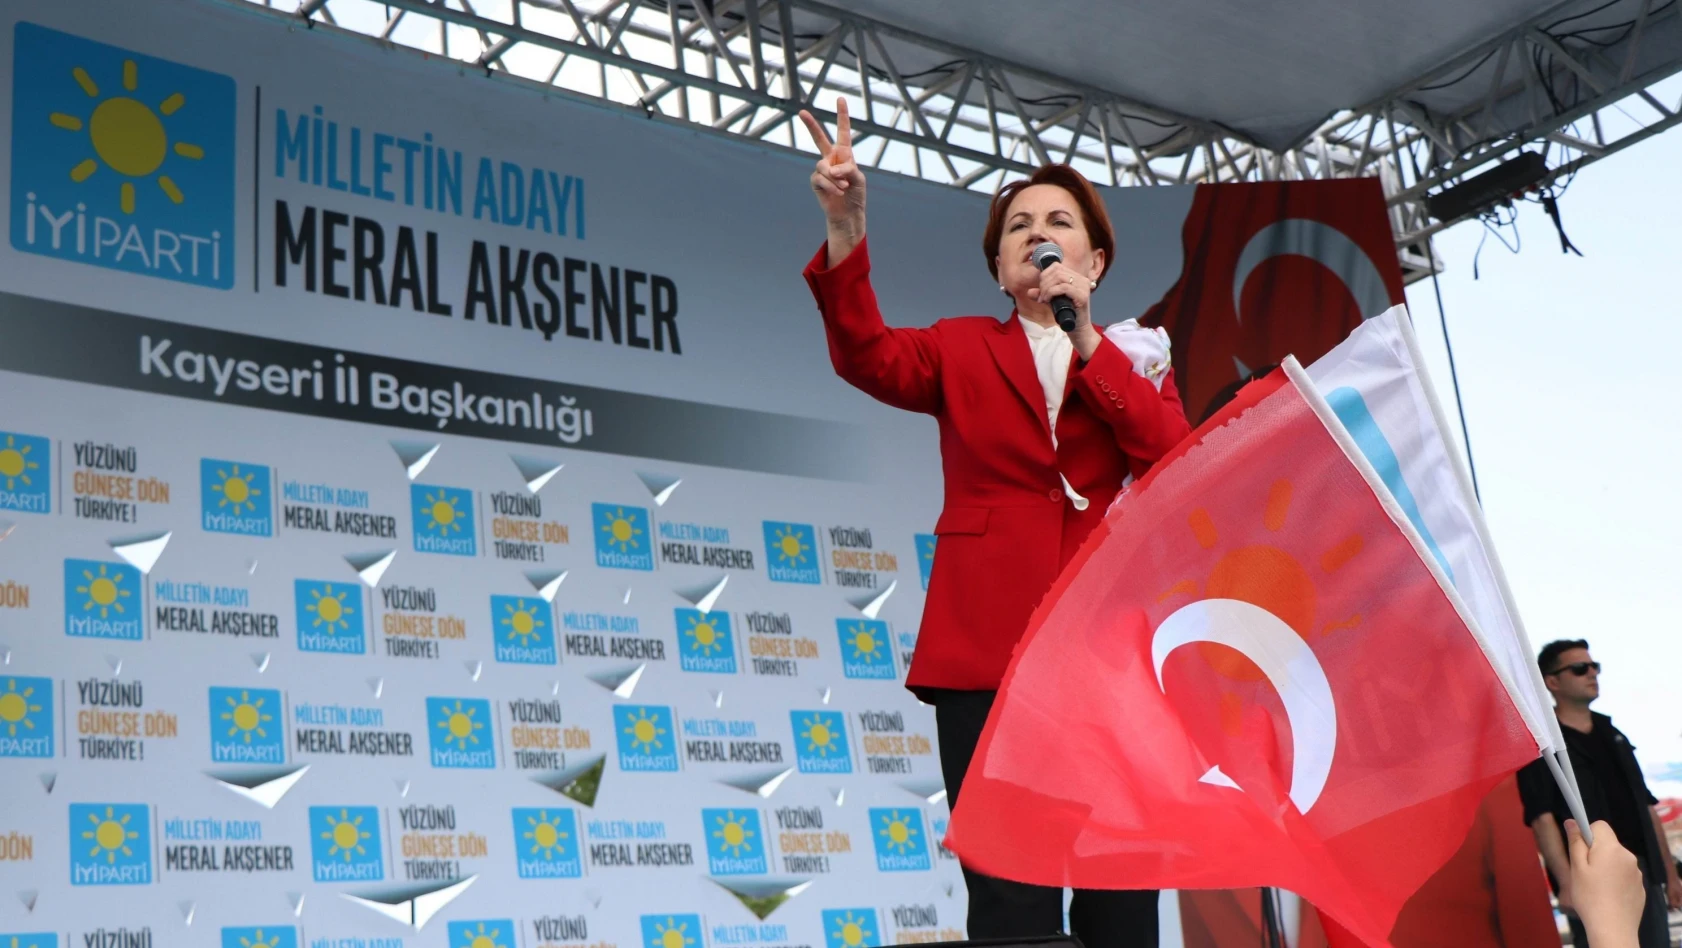 Akşener Kayseri'de ekonomi politikalarını eleştirdi